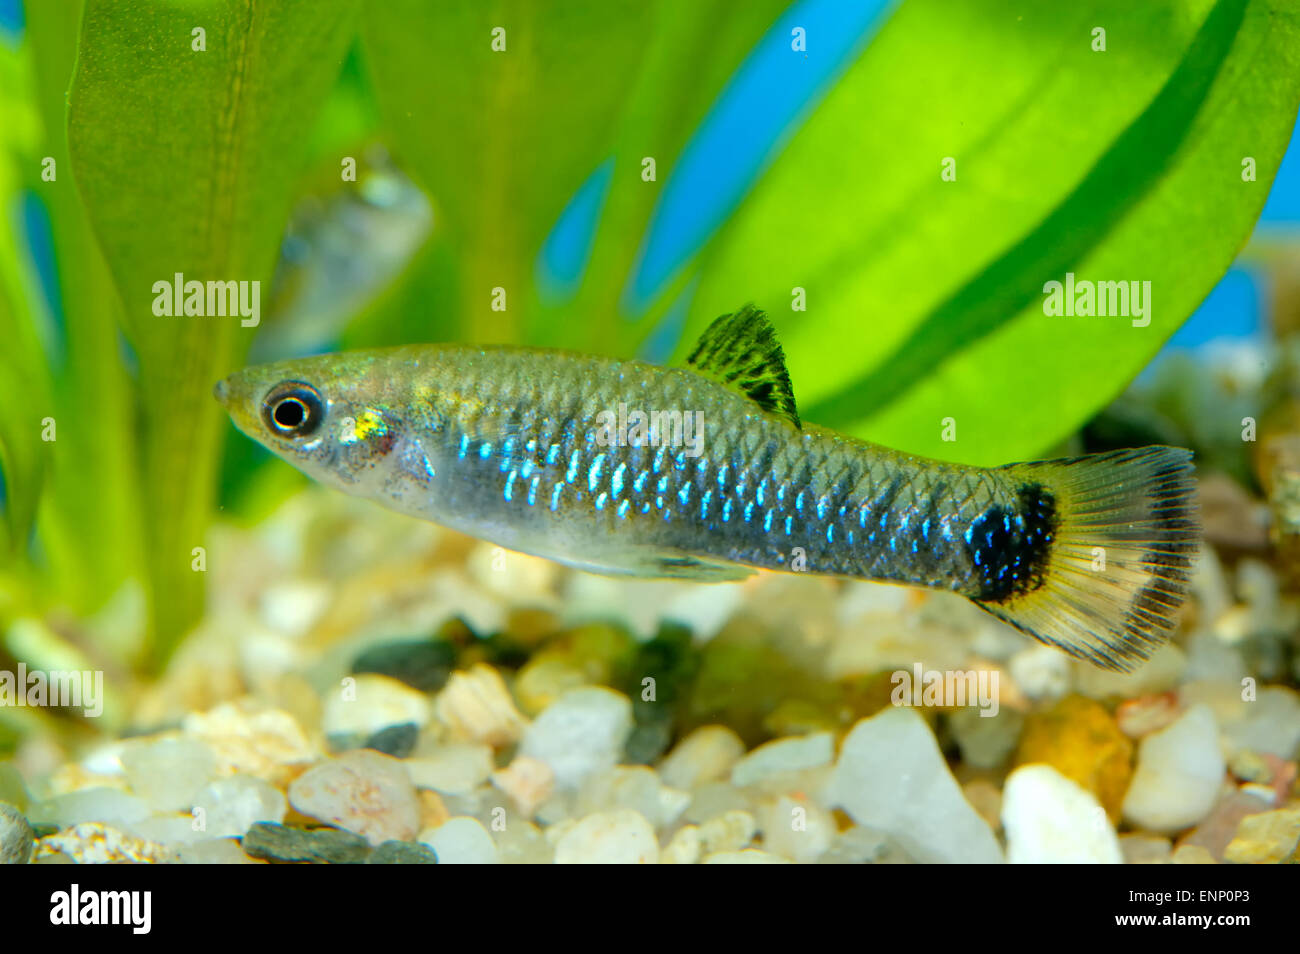 Nice aquarium fish from genus Poecilia. Stock Photo